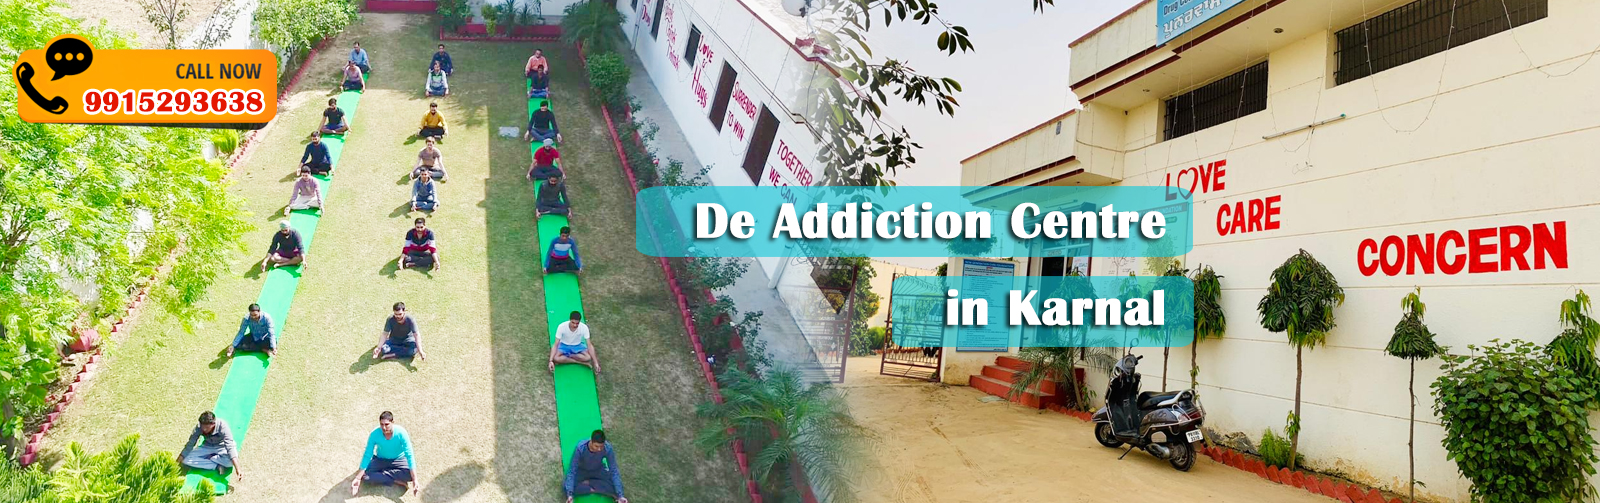 De Addiction Centre in Karnal